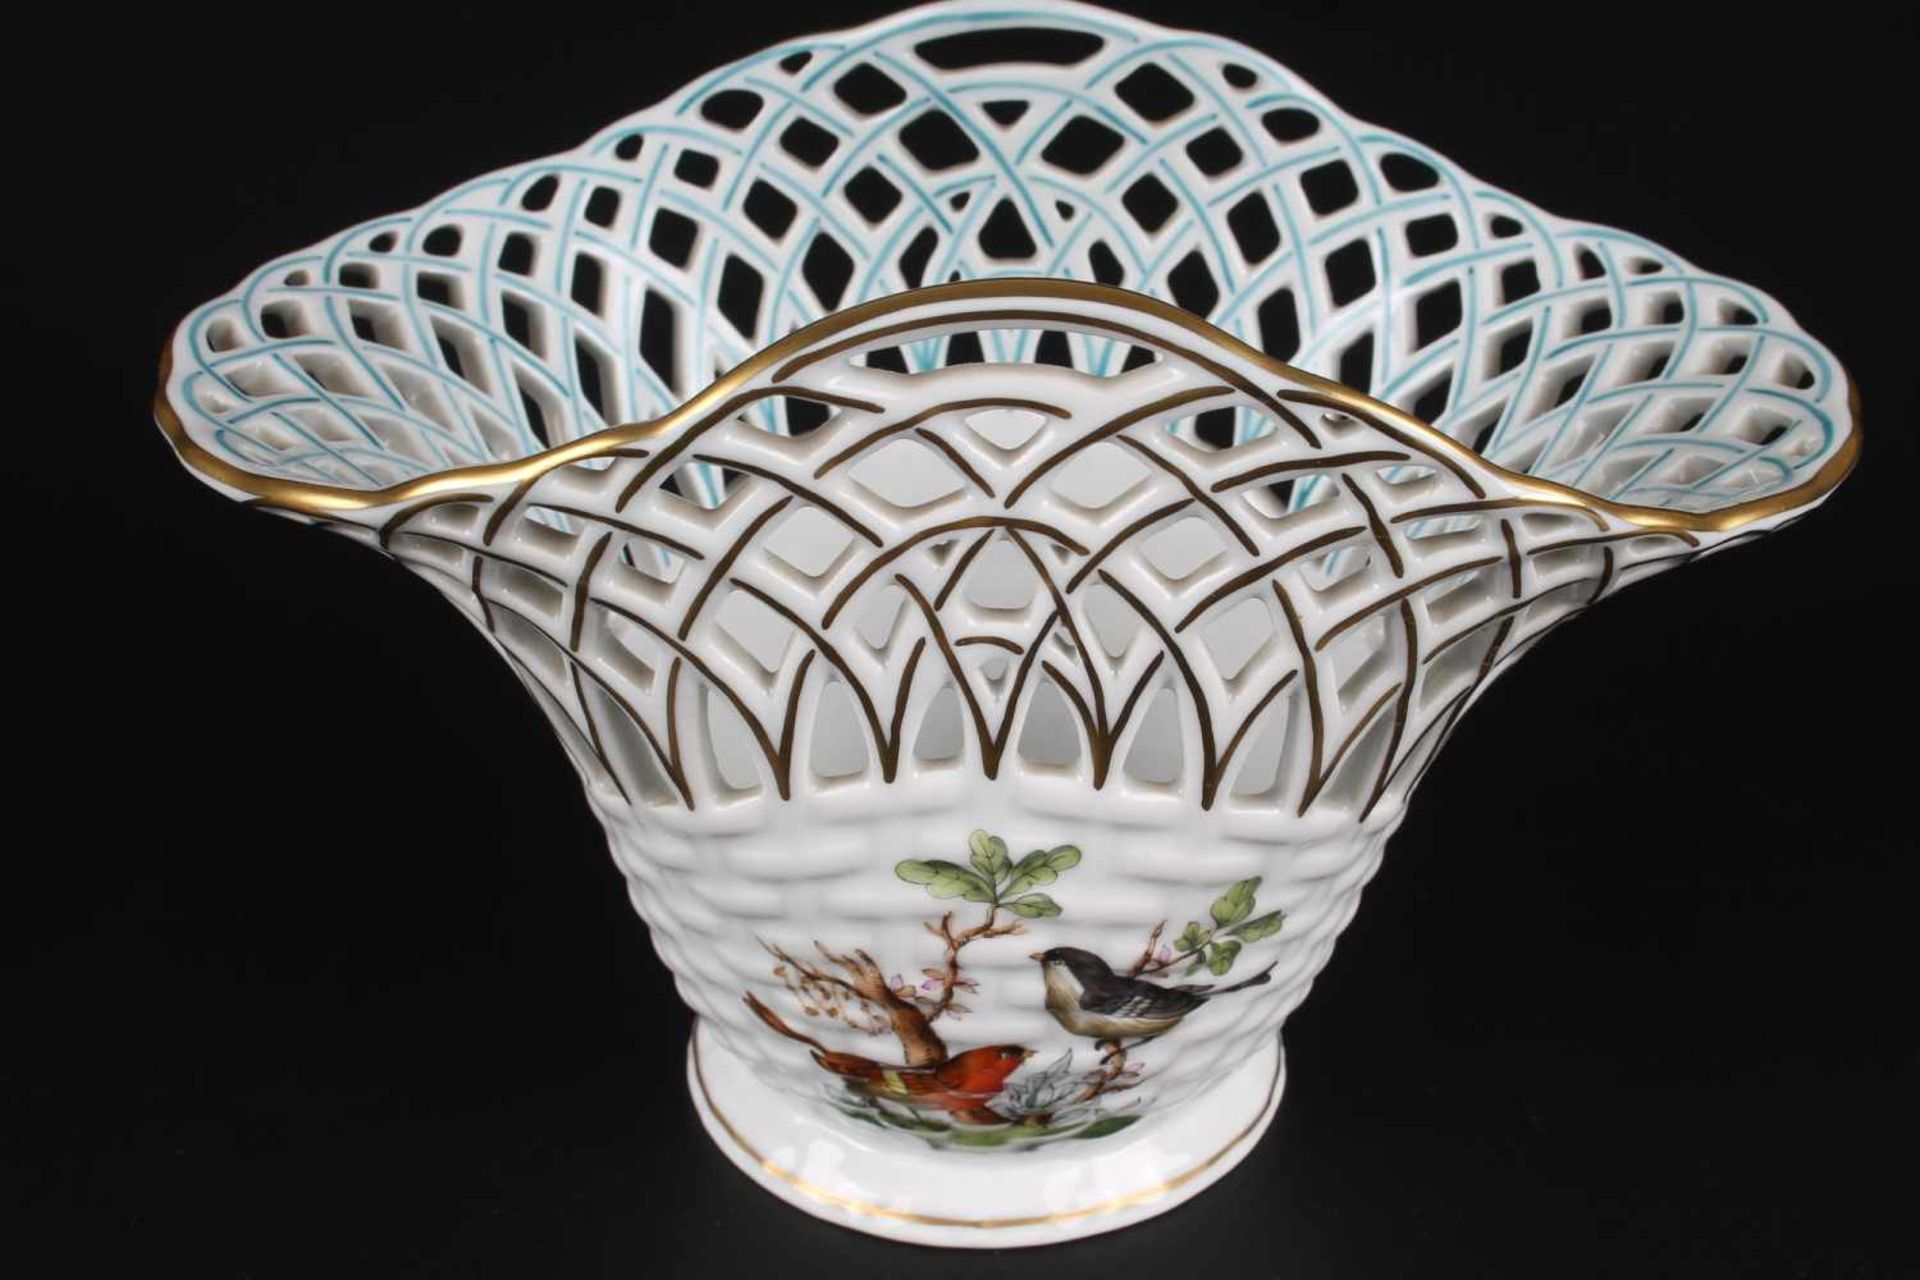 Herend Rothschild Schale bowl,Porzellan, Ungarn 20. Jahrhundert, Dekor Rothschild, Durchbrucharbeit,